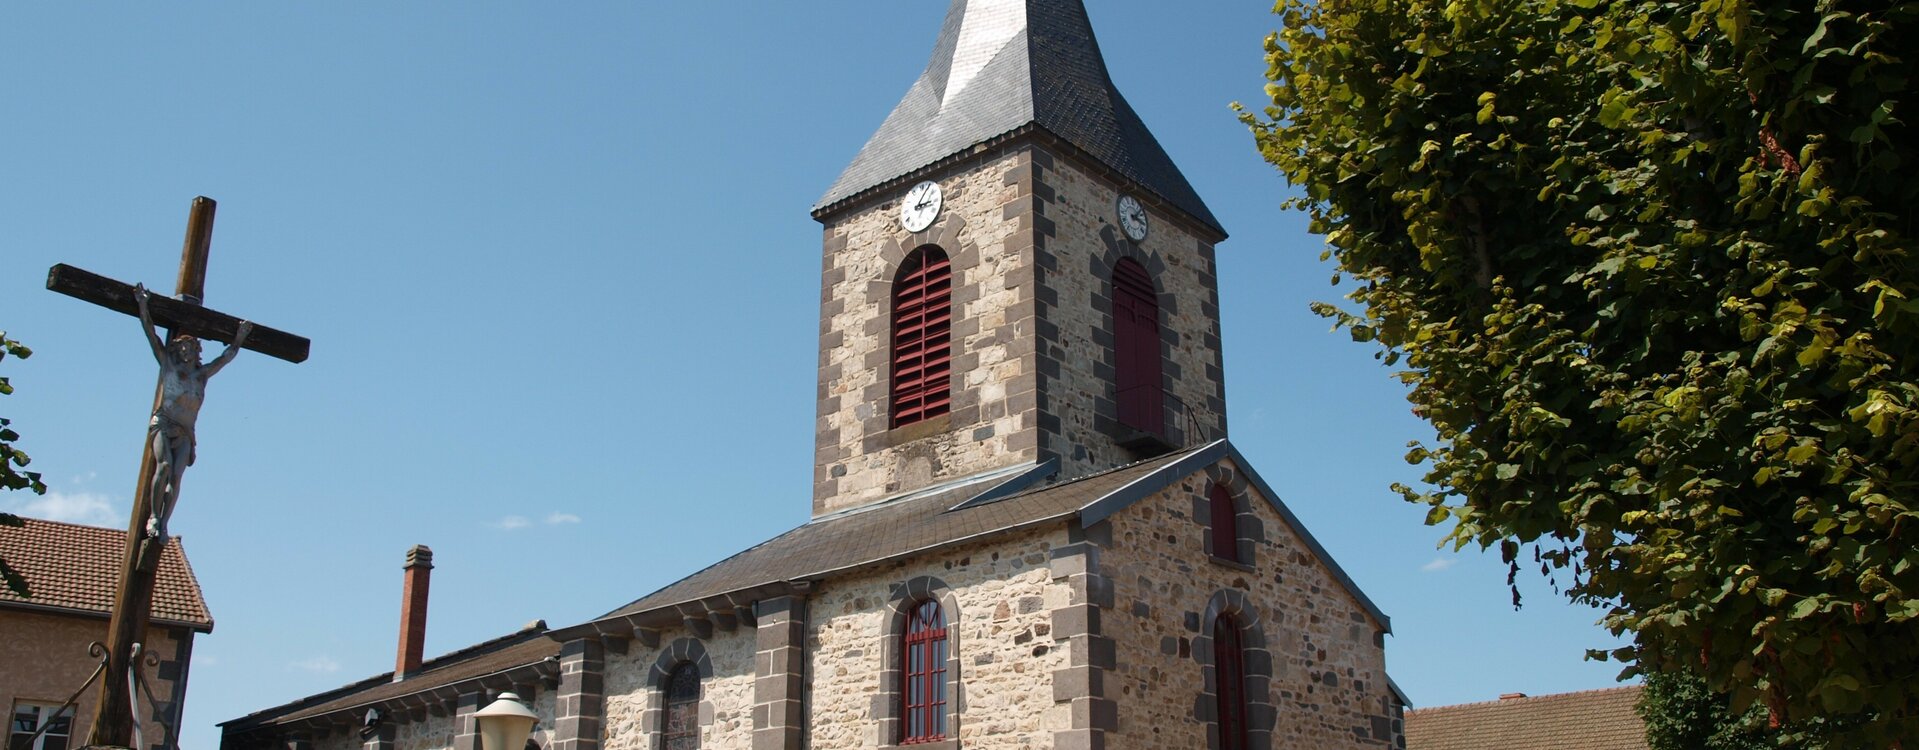 Communauté de communes Combrailles Sioule et Morge - Saint Georges de Mons (63)